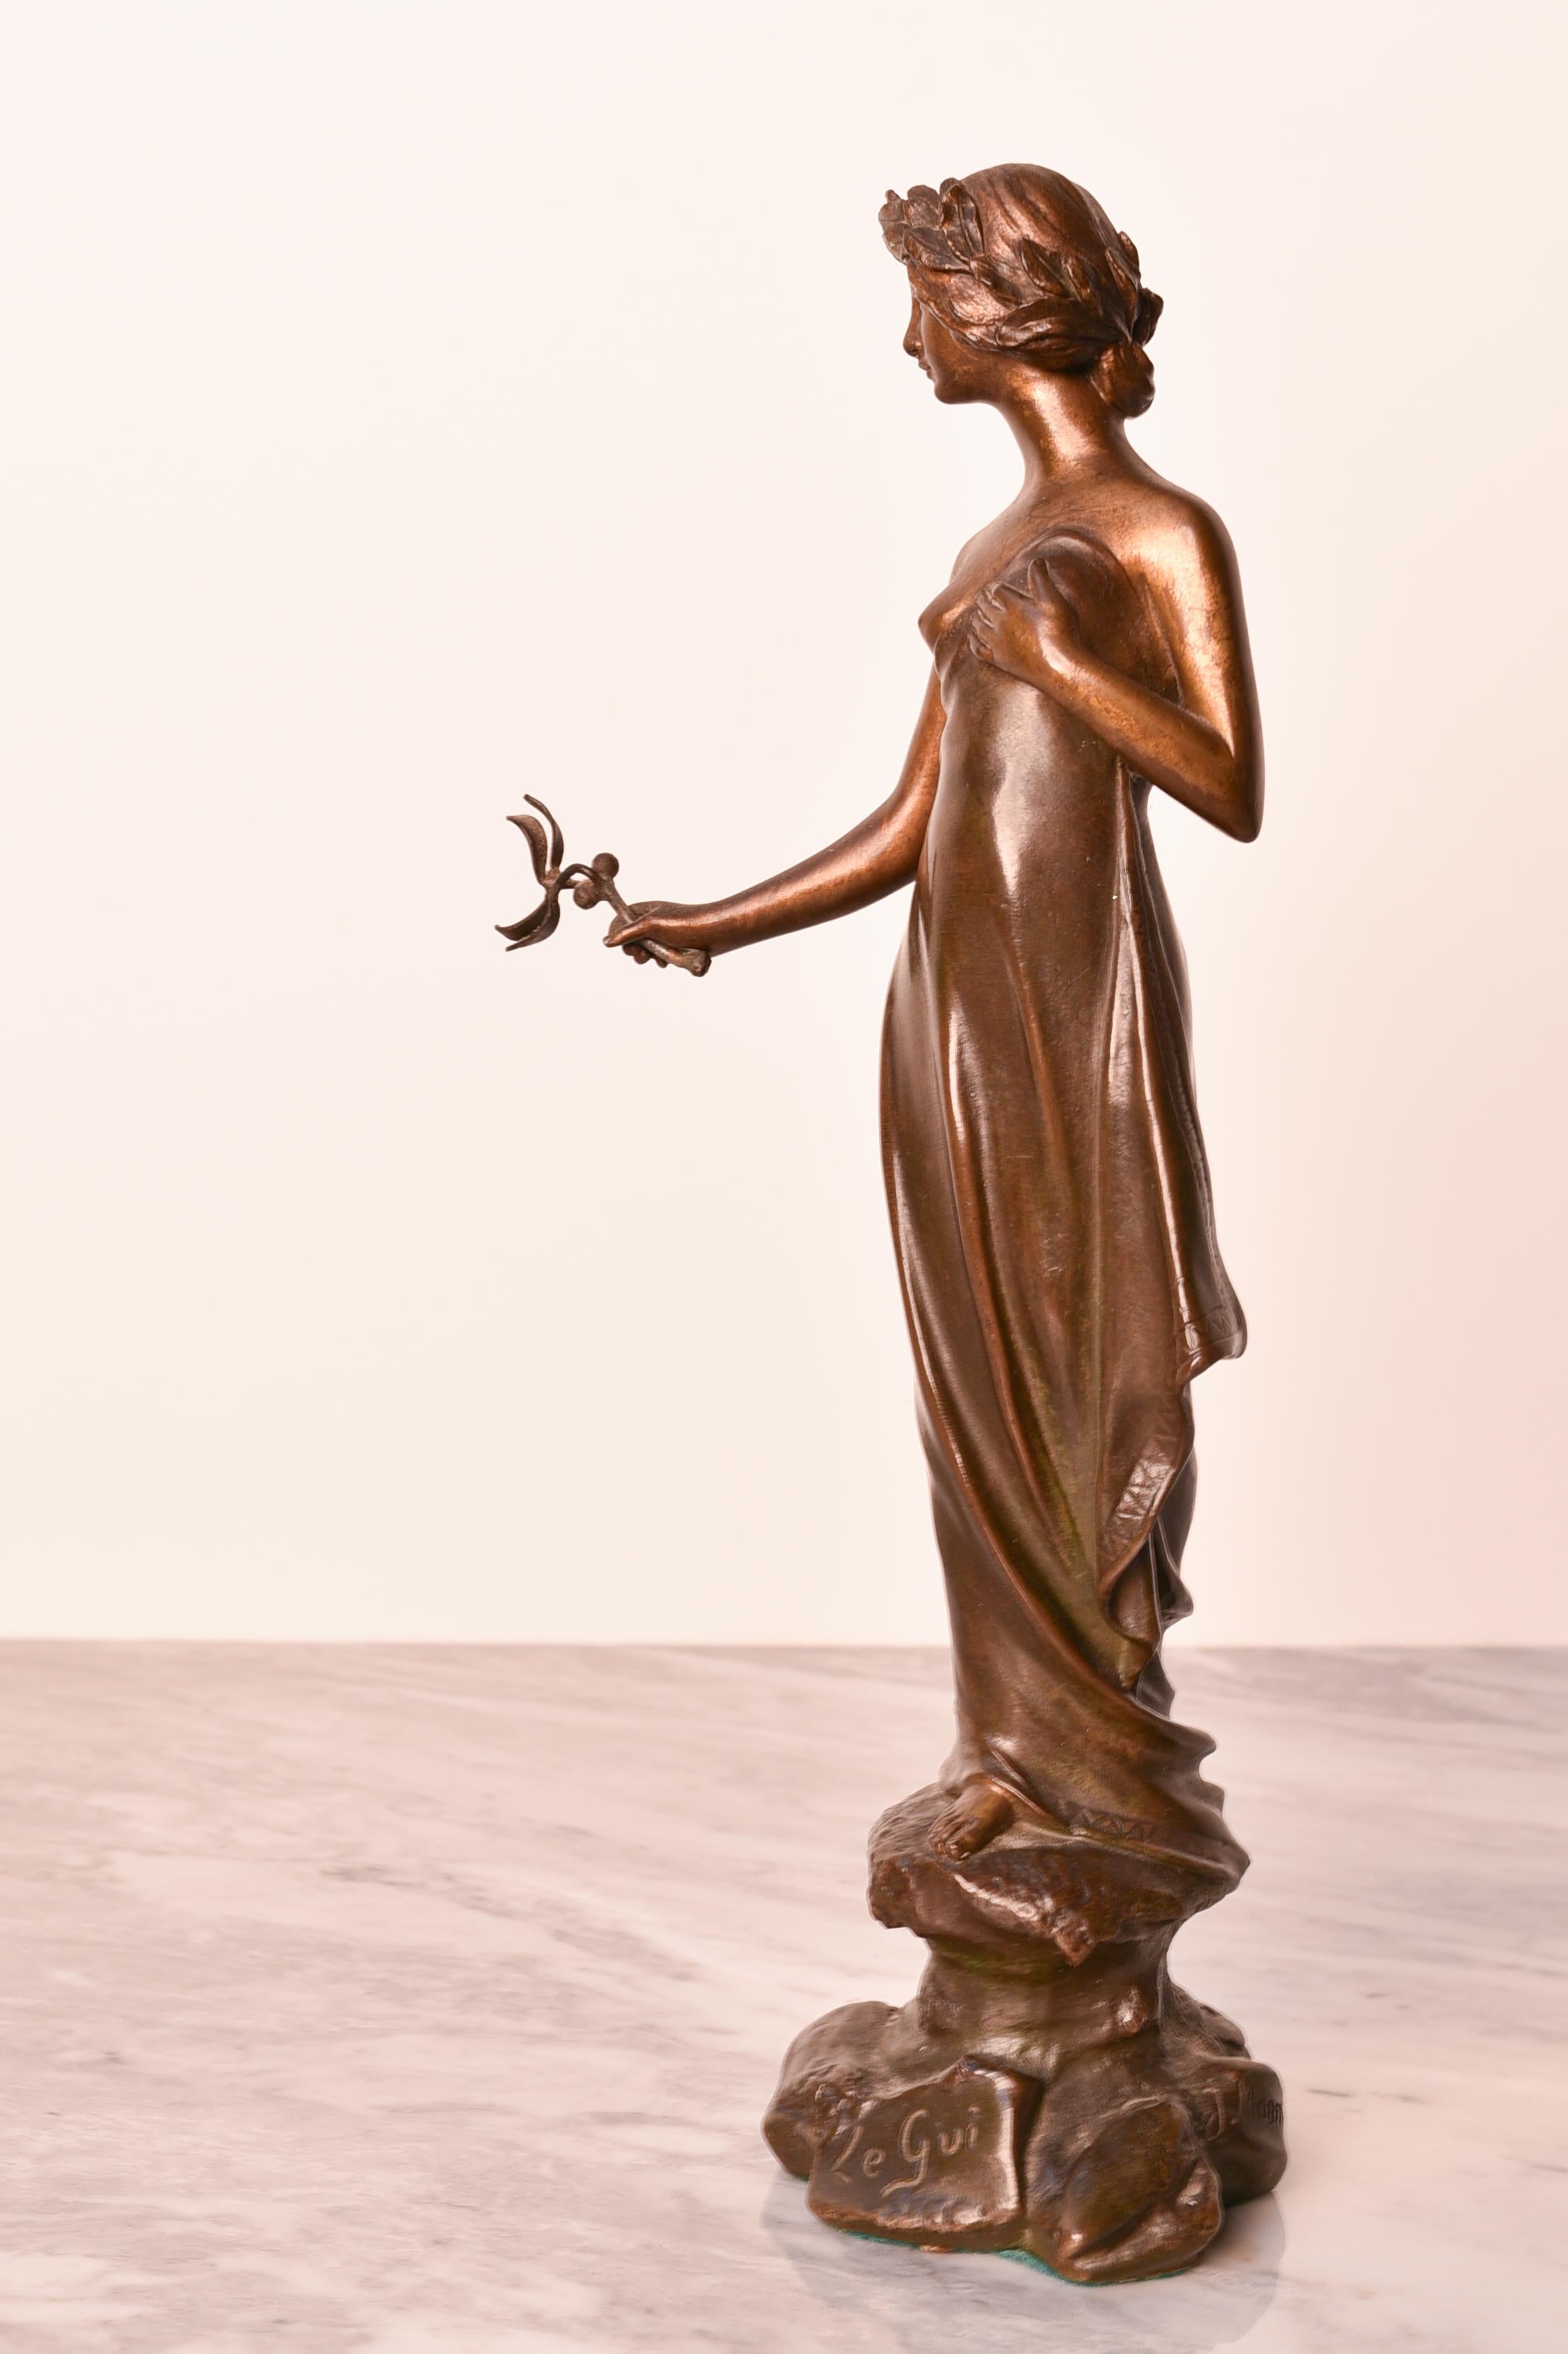 Statue en bronze de style Art nouveau, signée par l'artiste Joan Fortuny Monmany (1866-1918). La statue porte également une marque de fonderie et le nom de l'œuvre d'art (Le Gui = le gui) a été coulé dans le bronze. 